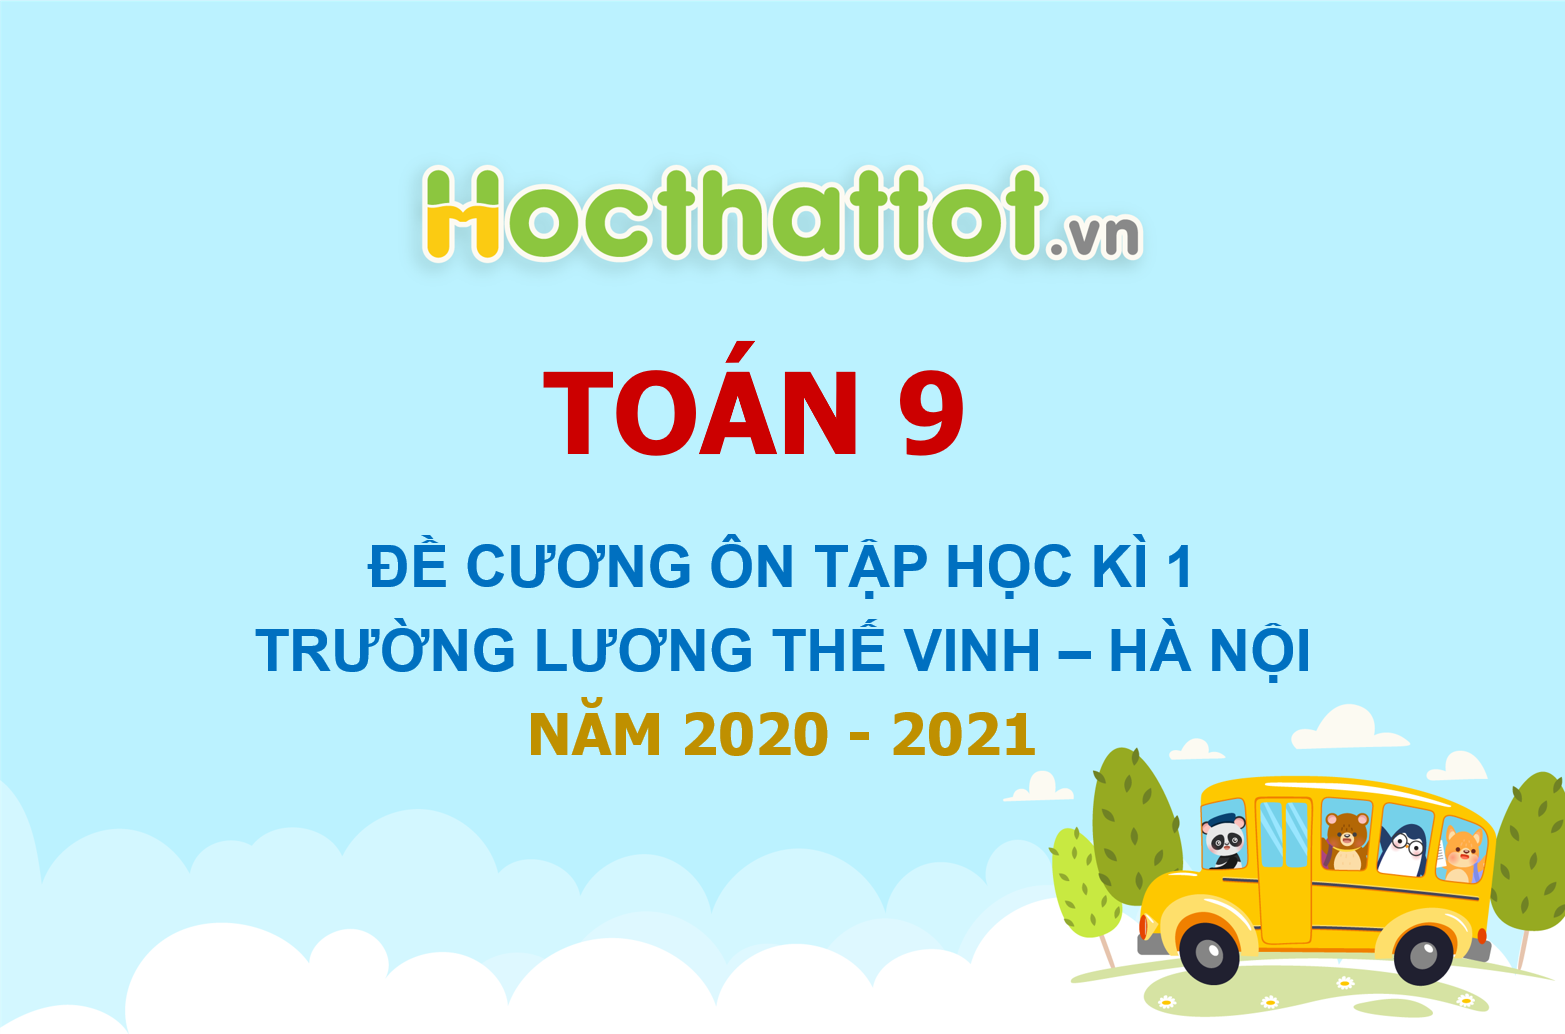 de-cuong-on-tap-hoc-ki-1-toan-9-nam-2020-2021-truong-luong-the-vinh-ha-noi